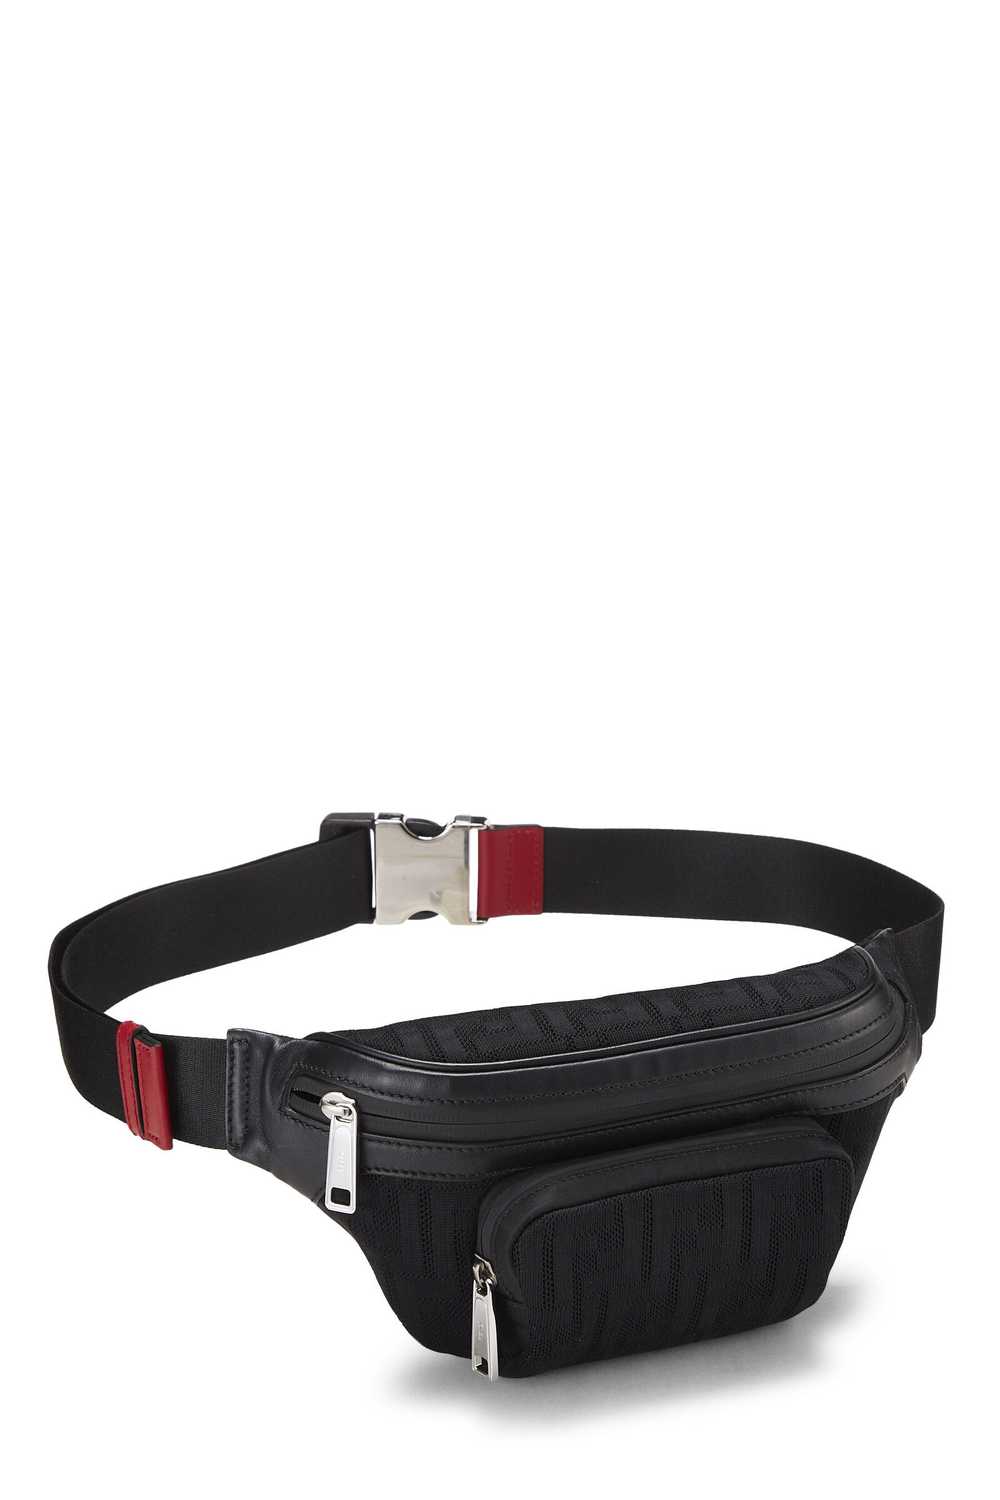 Black Mesh Zucca Belt Bag - image 2